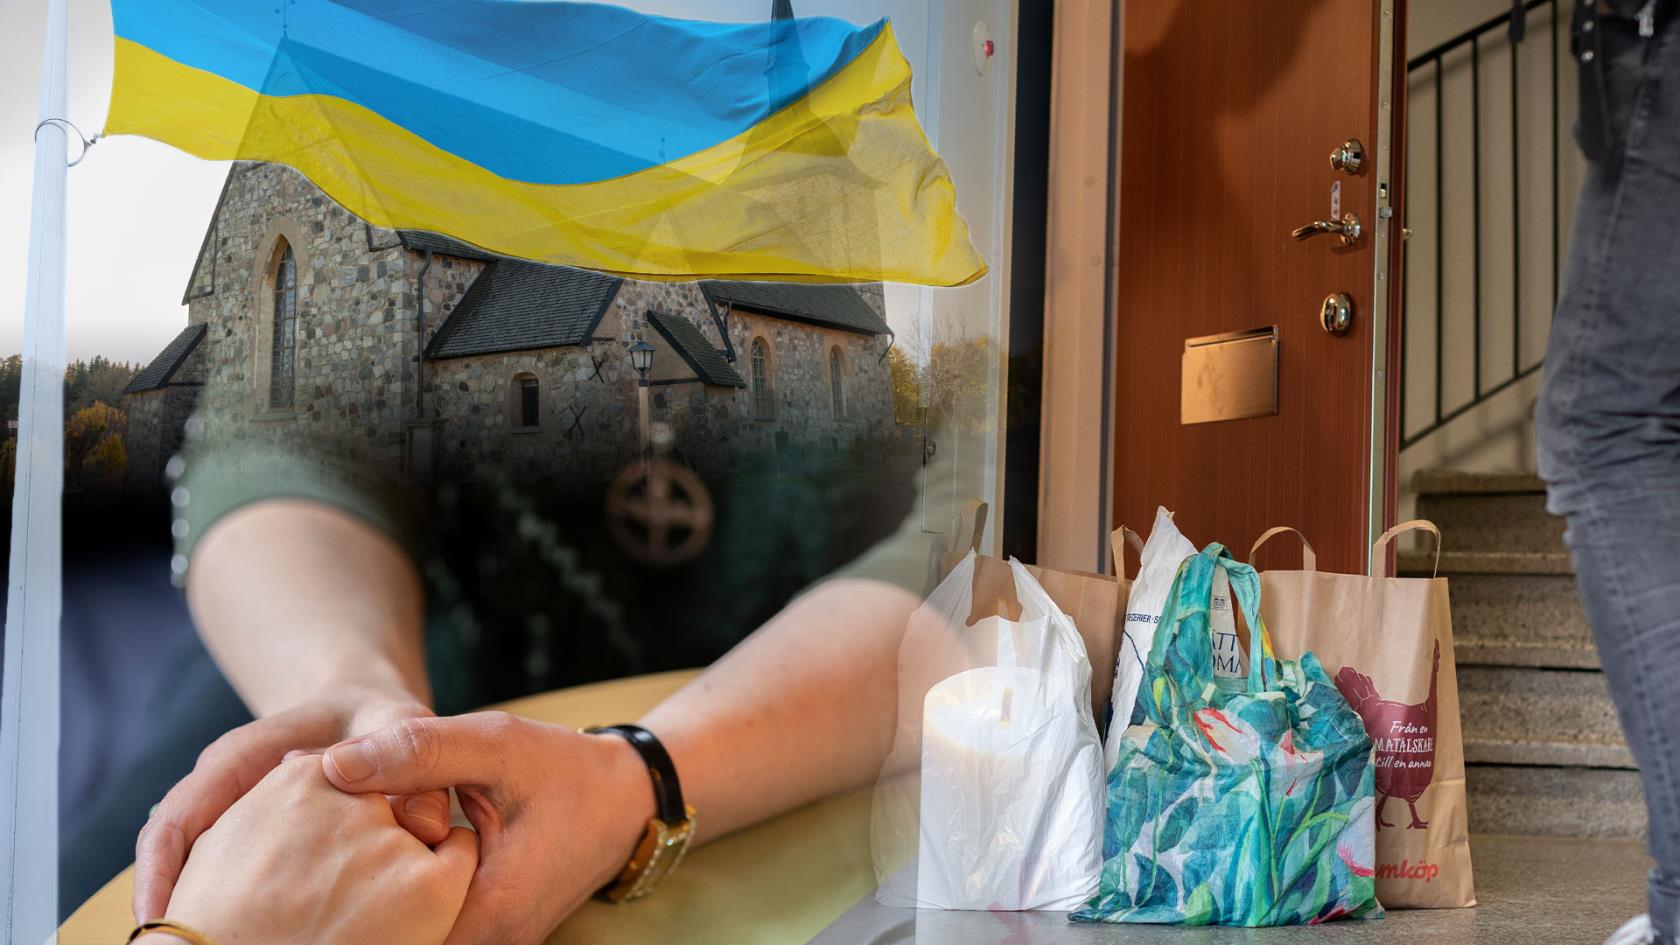 Kollage med bild på Botkyrka kyrka, en ukrainsk flagga, en person som lämnar matkassar utanför en lägenhetsdörr och två personer som håller varandra i handen